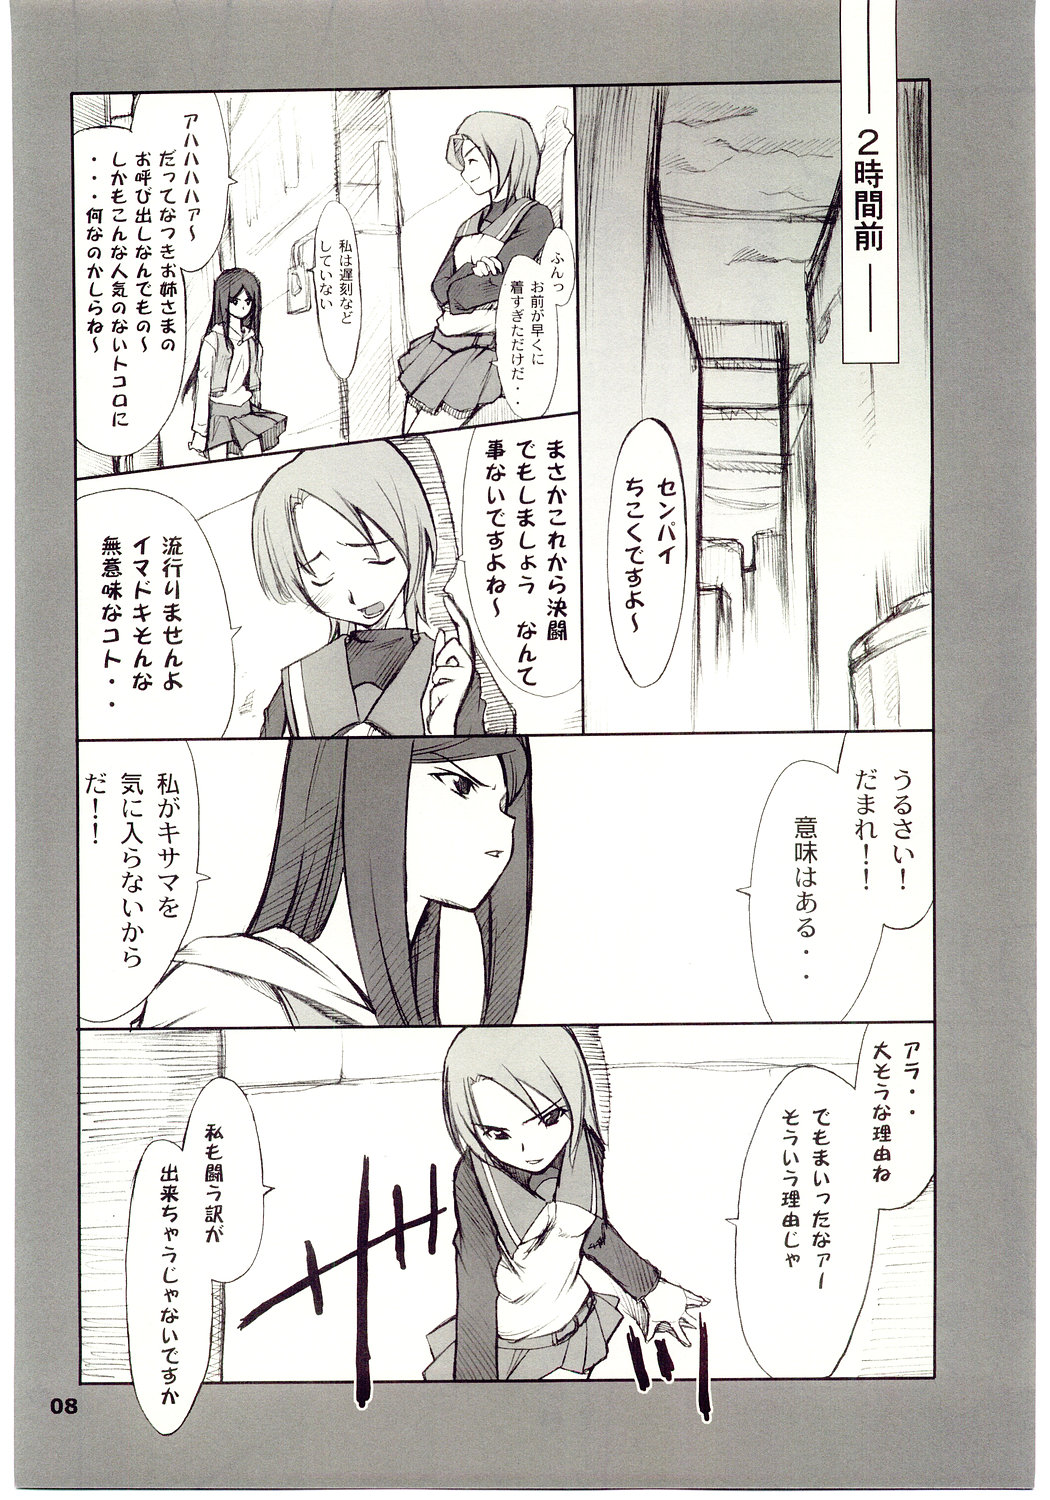 [P.Forest (Hozumi Takashi)] Kuga-chan to Iroiro (Mai Hime) page 7 full